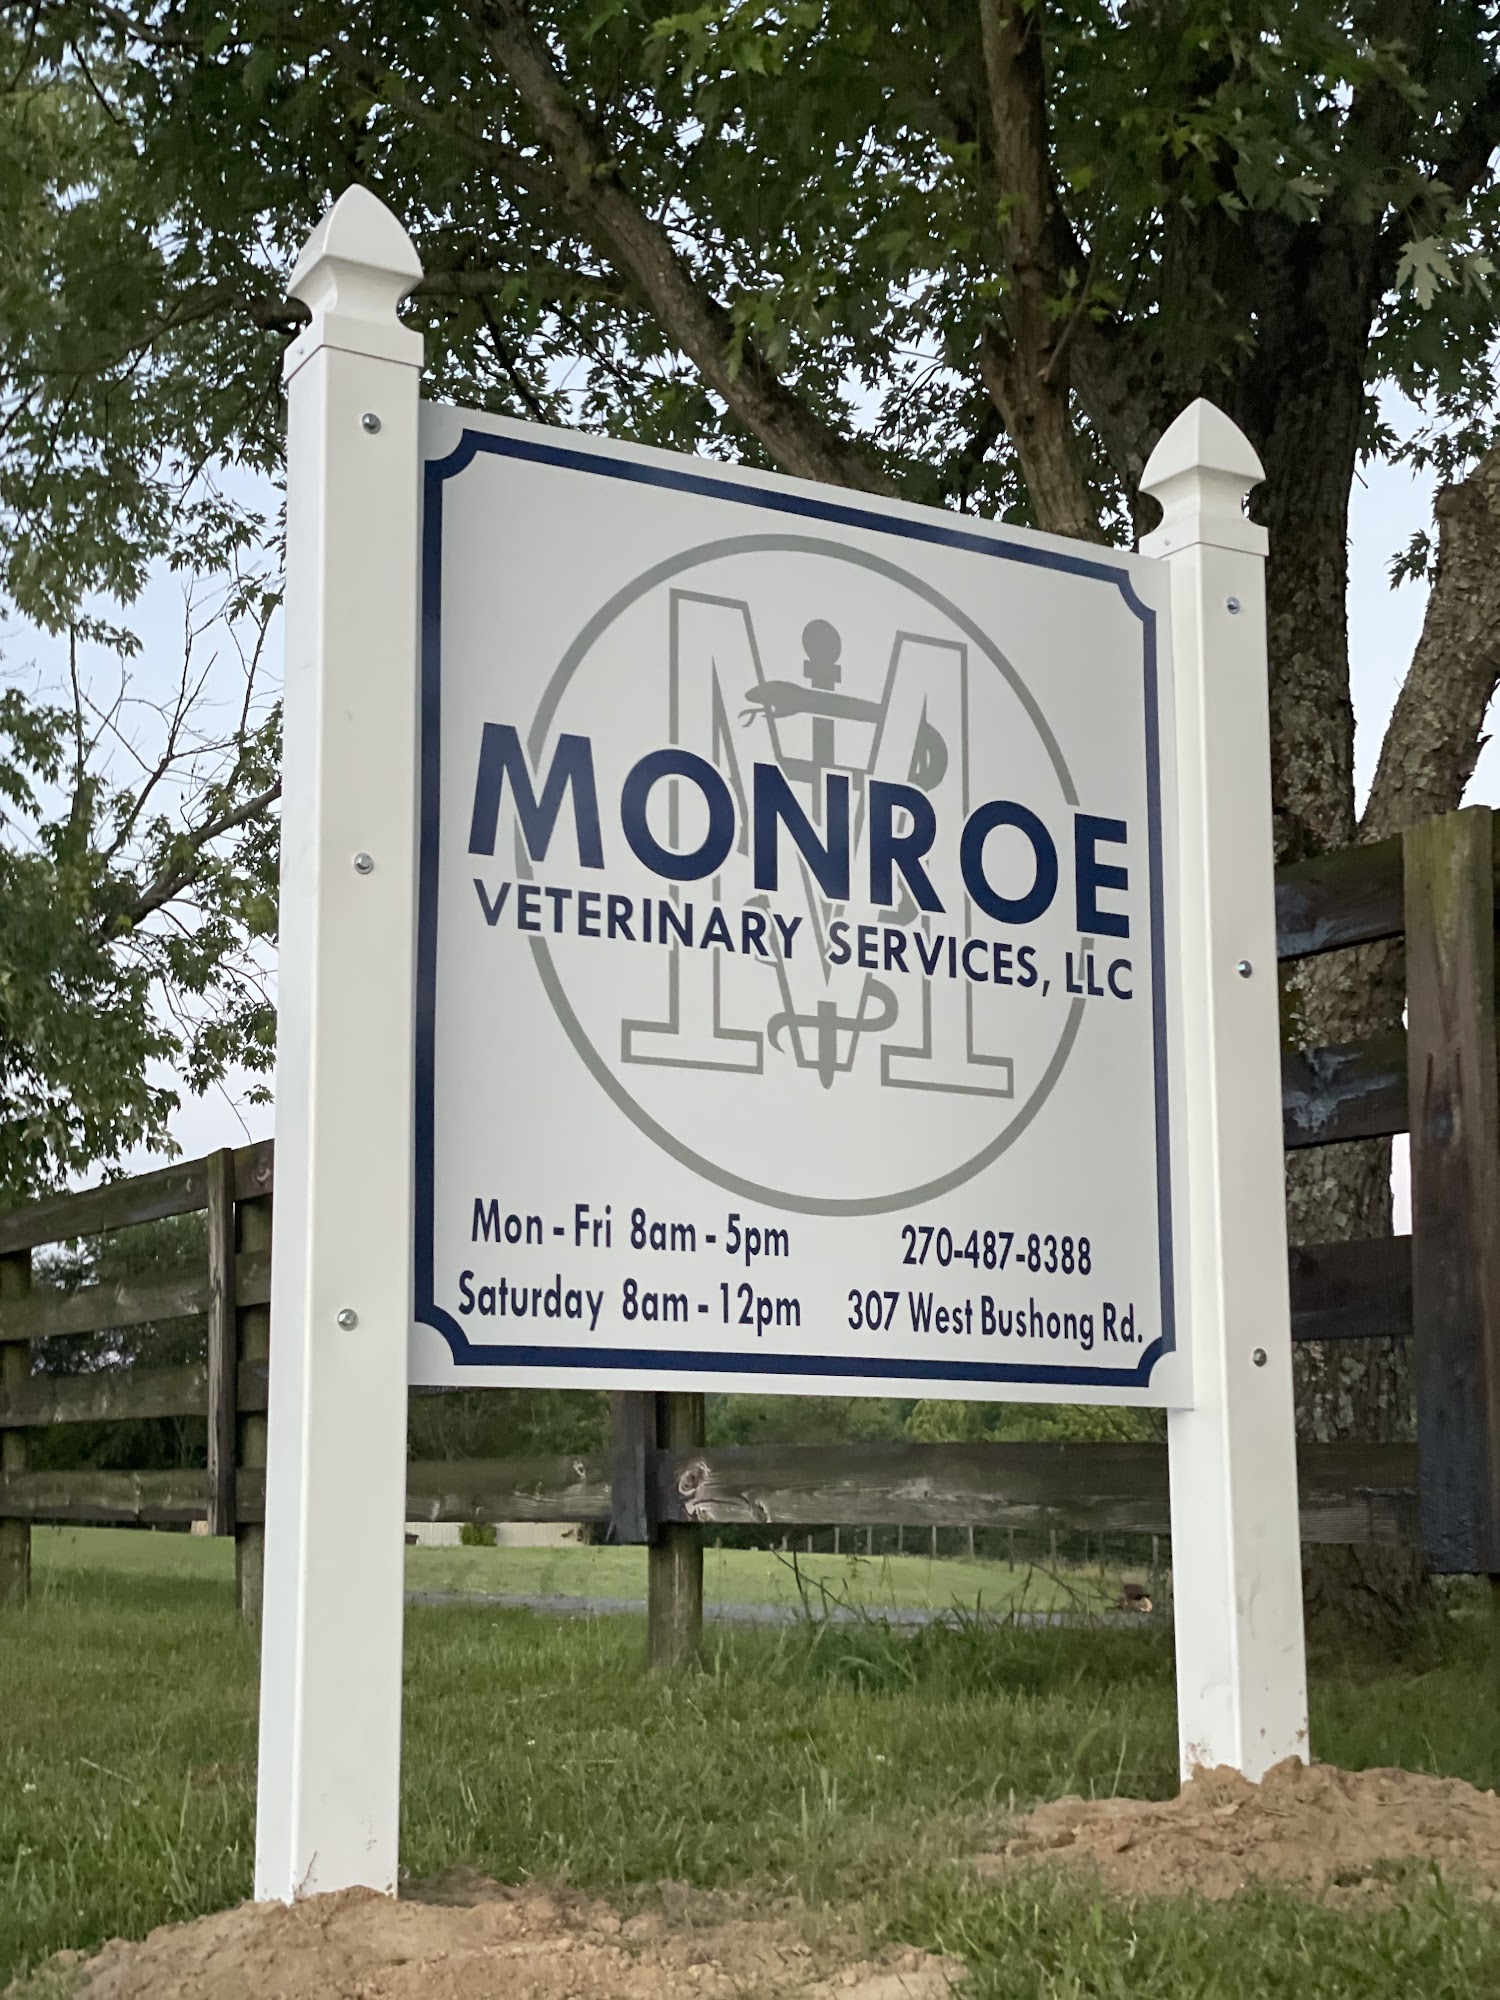 Monroe Veterinary Services, LLC 307 W Bushong Rd, Tompkinsville Kentucky 42167